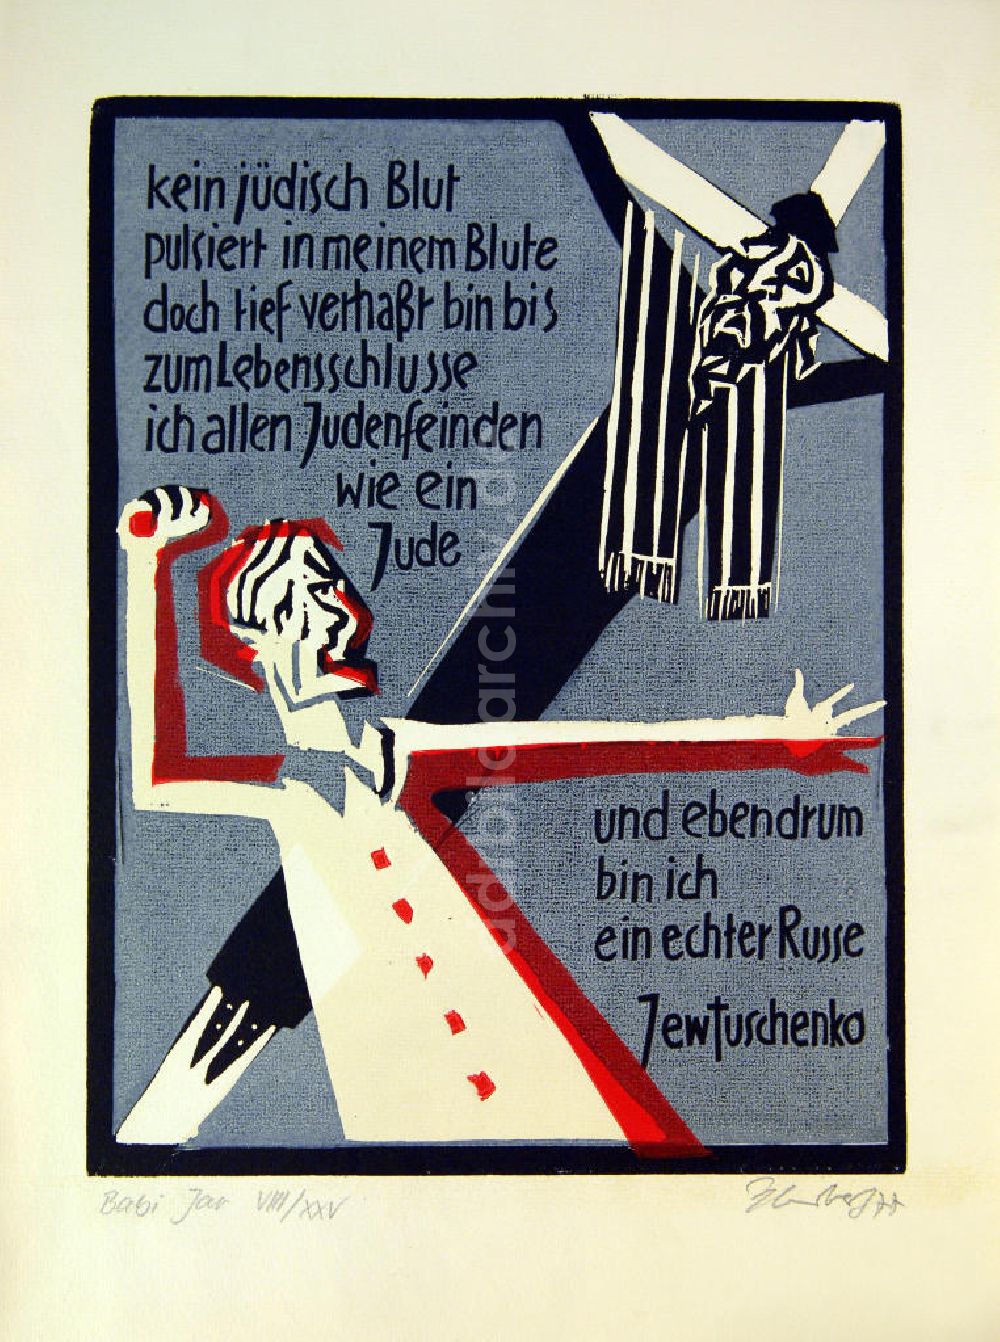 DDR-Fotoarchiv: Berlin - Grafik von Herbert Sandberg Babi Jar (Jewtuschenko) aus dem Jahr 1977